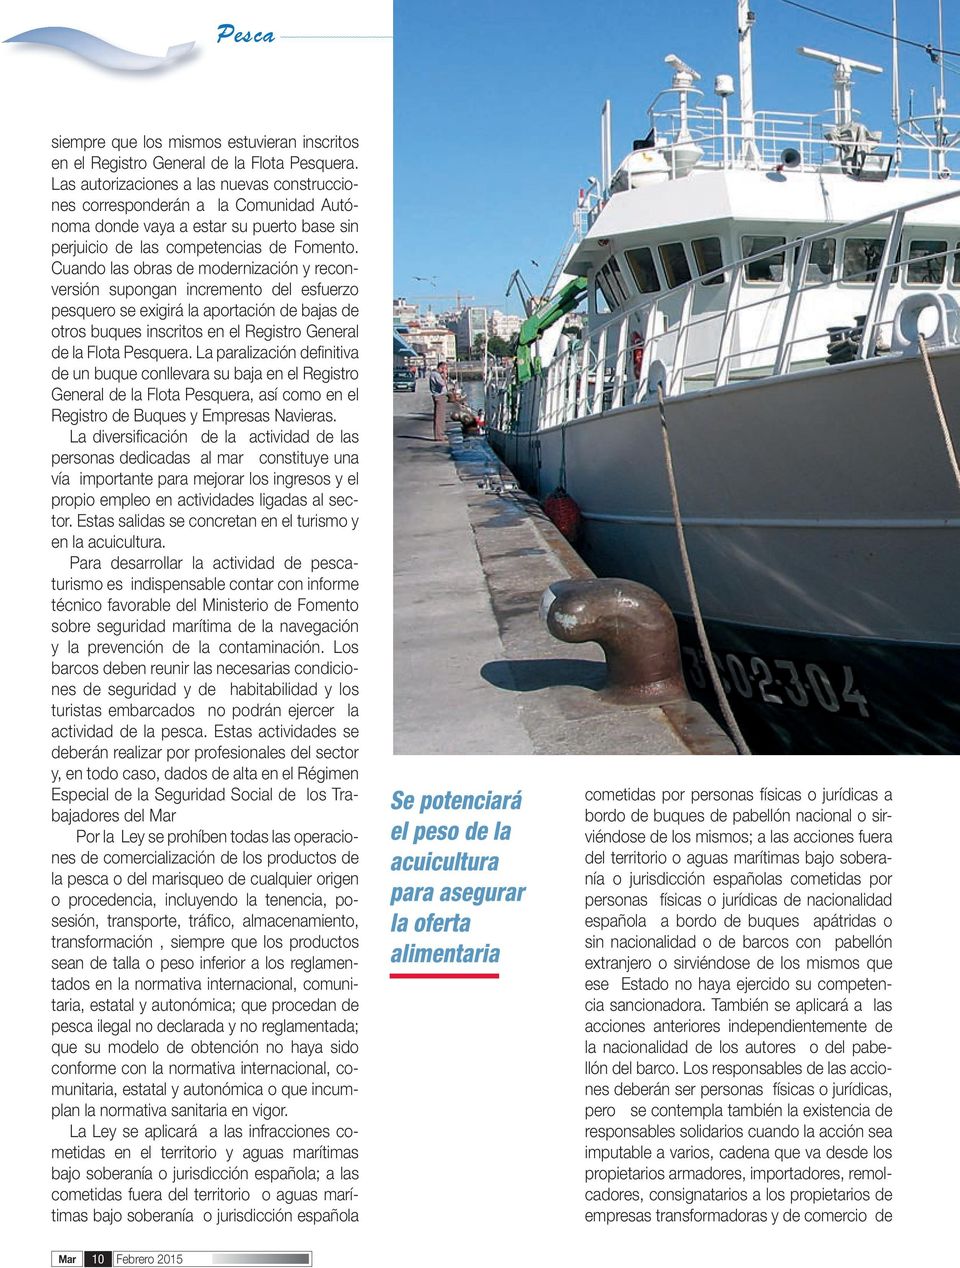 Cuando las obras de modernización y reconversión supongan incremento del esfuerzo pesquero se exigirá la aportación de bajas de otros buques inscritos en el Registro General de la Flota Pesquera.